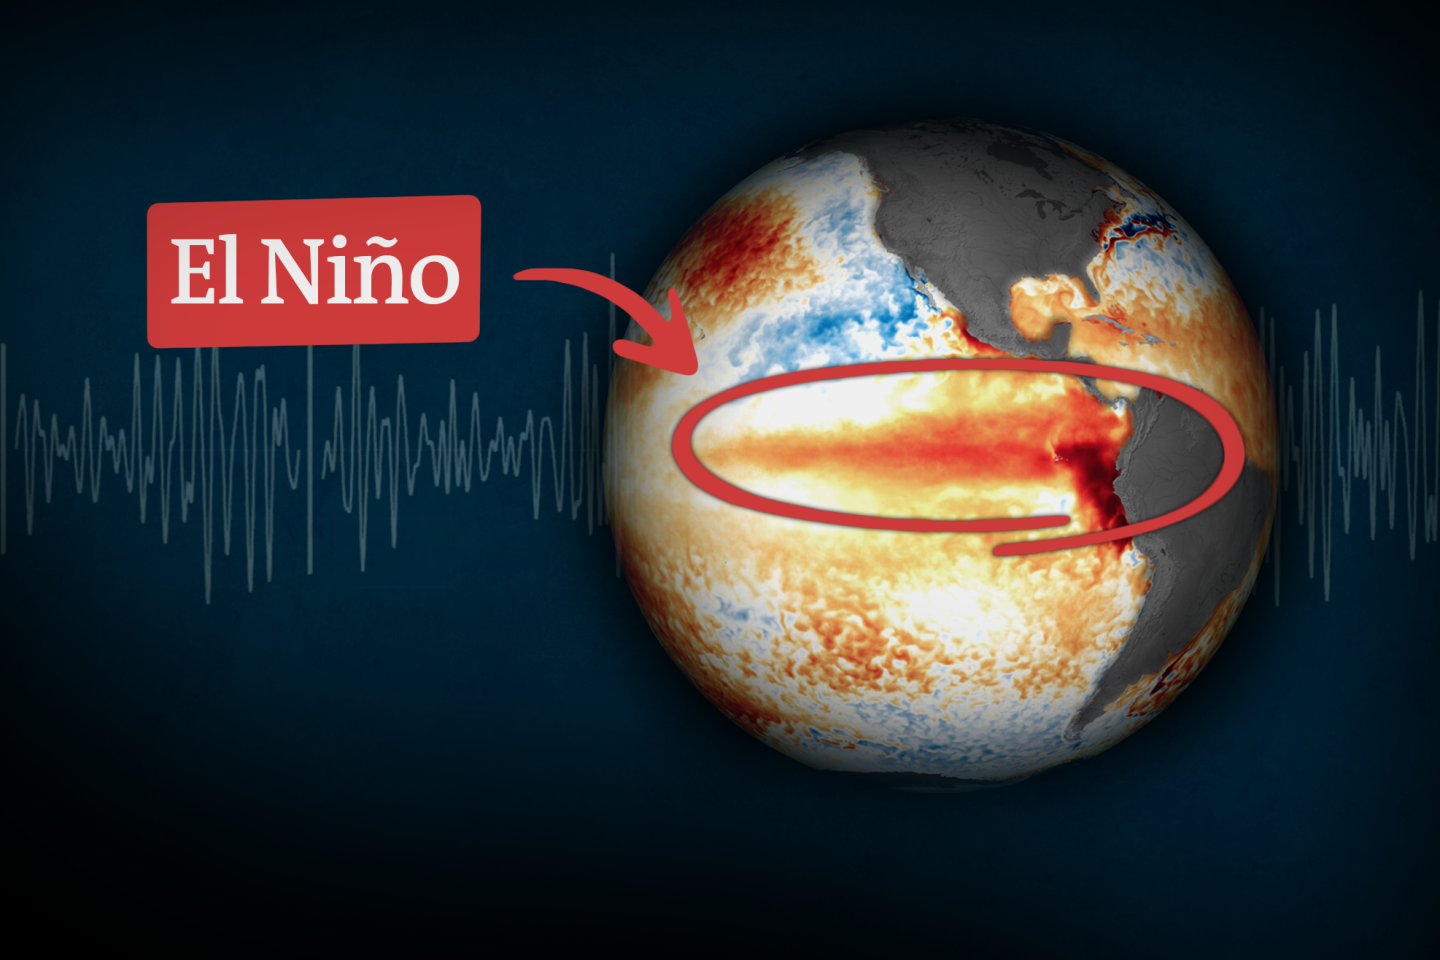 Le phénomène El Niño va-t-il aggraver le changement climatique ?